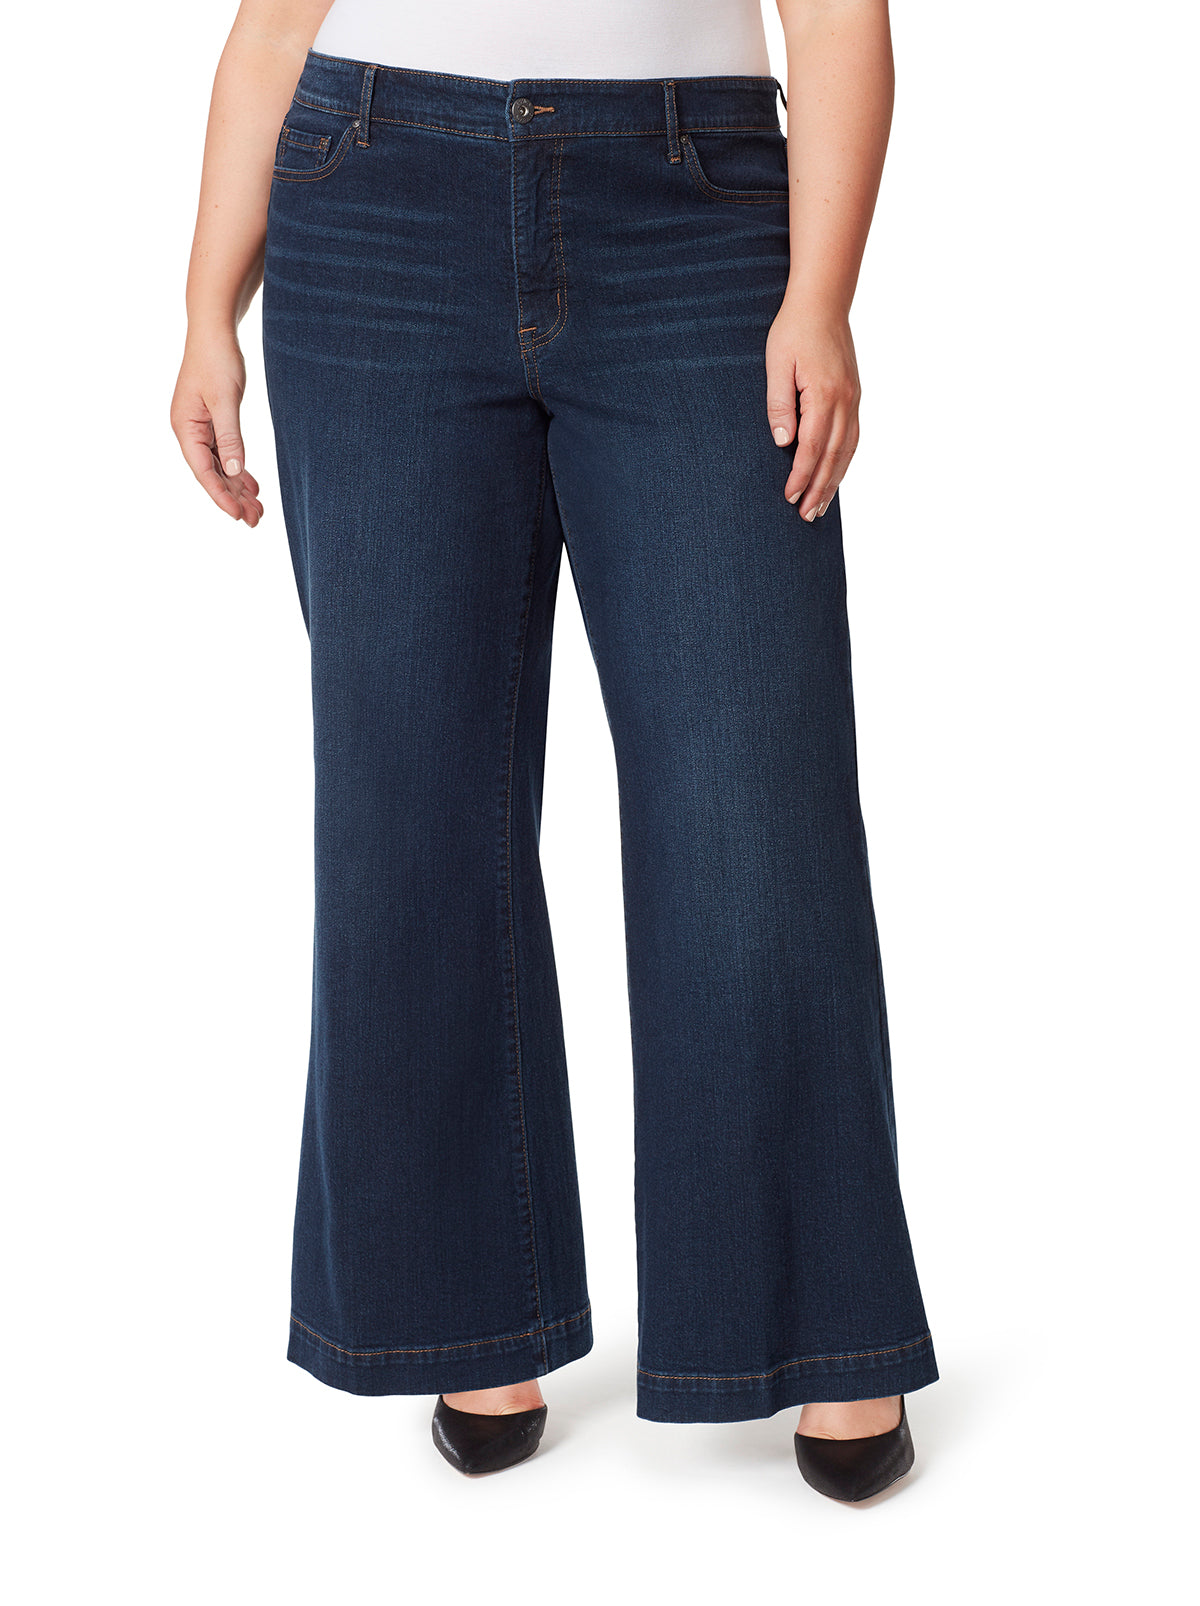 TRU Denim Jeans, Women's Fashion, Bottoms, Jeans on Carousell